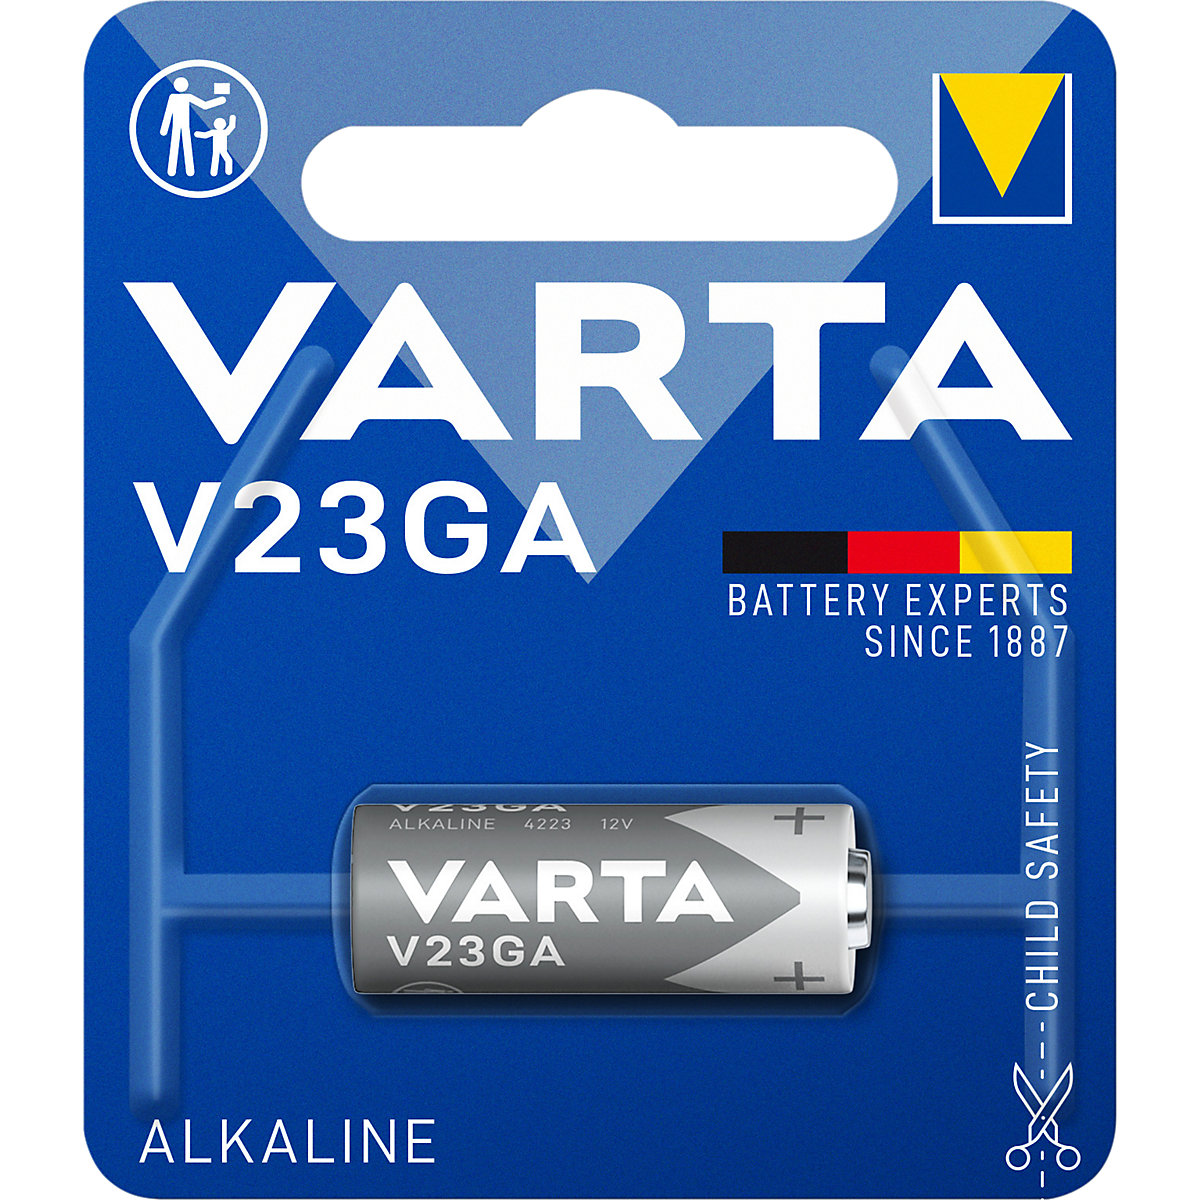 ALKALINE special battery – VARTA